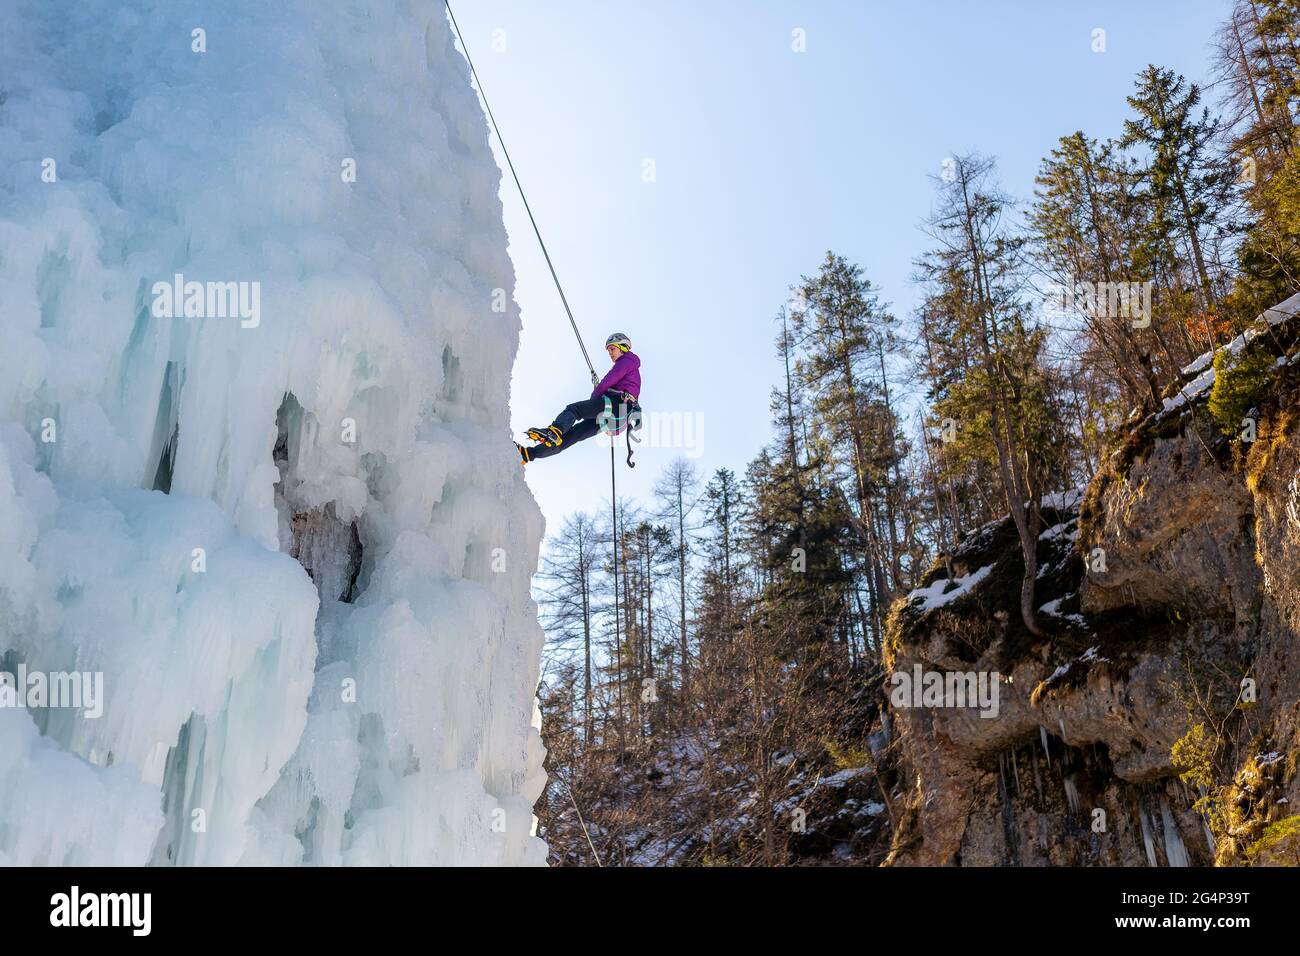 Frau klettert auf einem gefrorenen Wasserfall in Technik nach vorne gerichtet mit einem Fuß und flach mit dem anderen Stockfoto